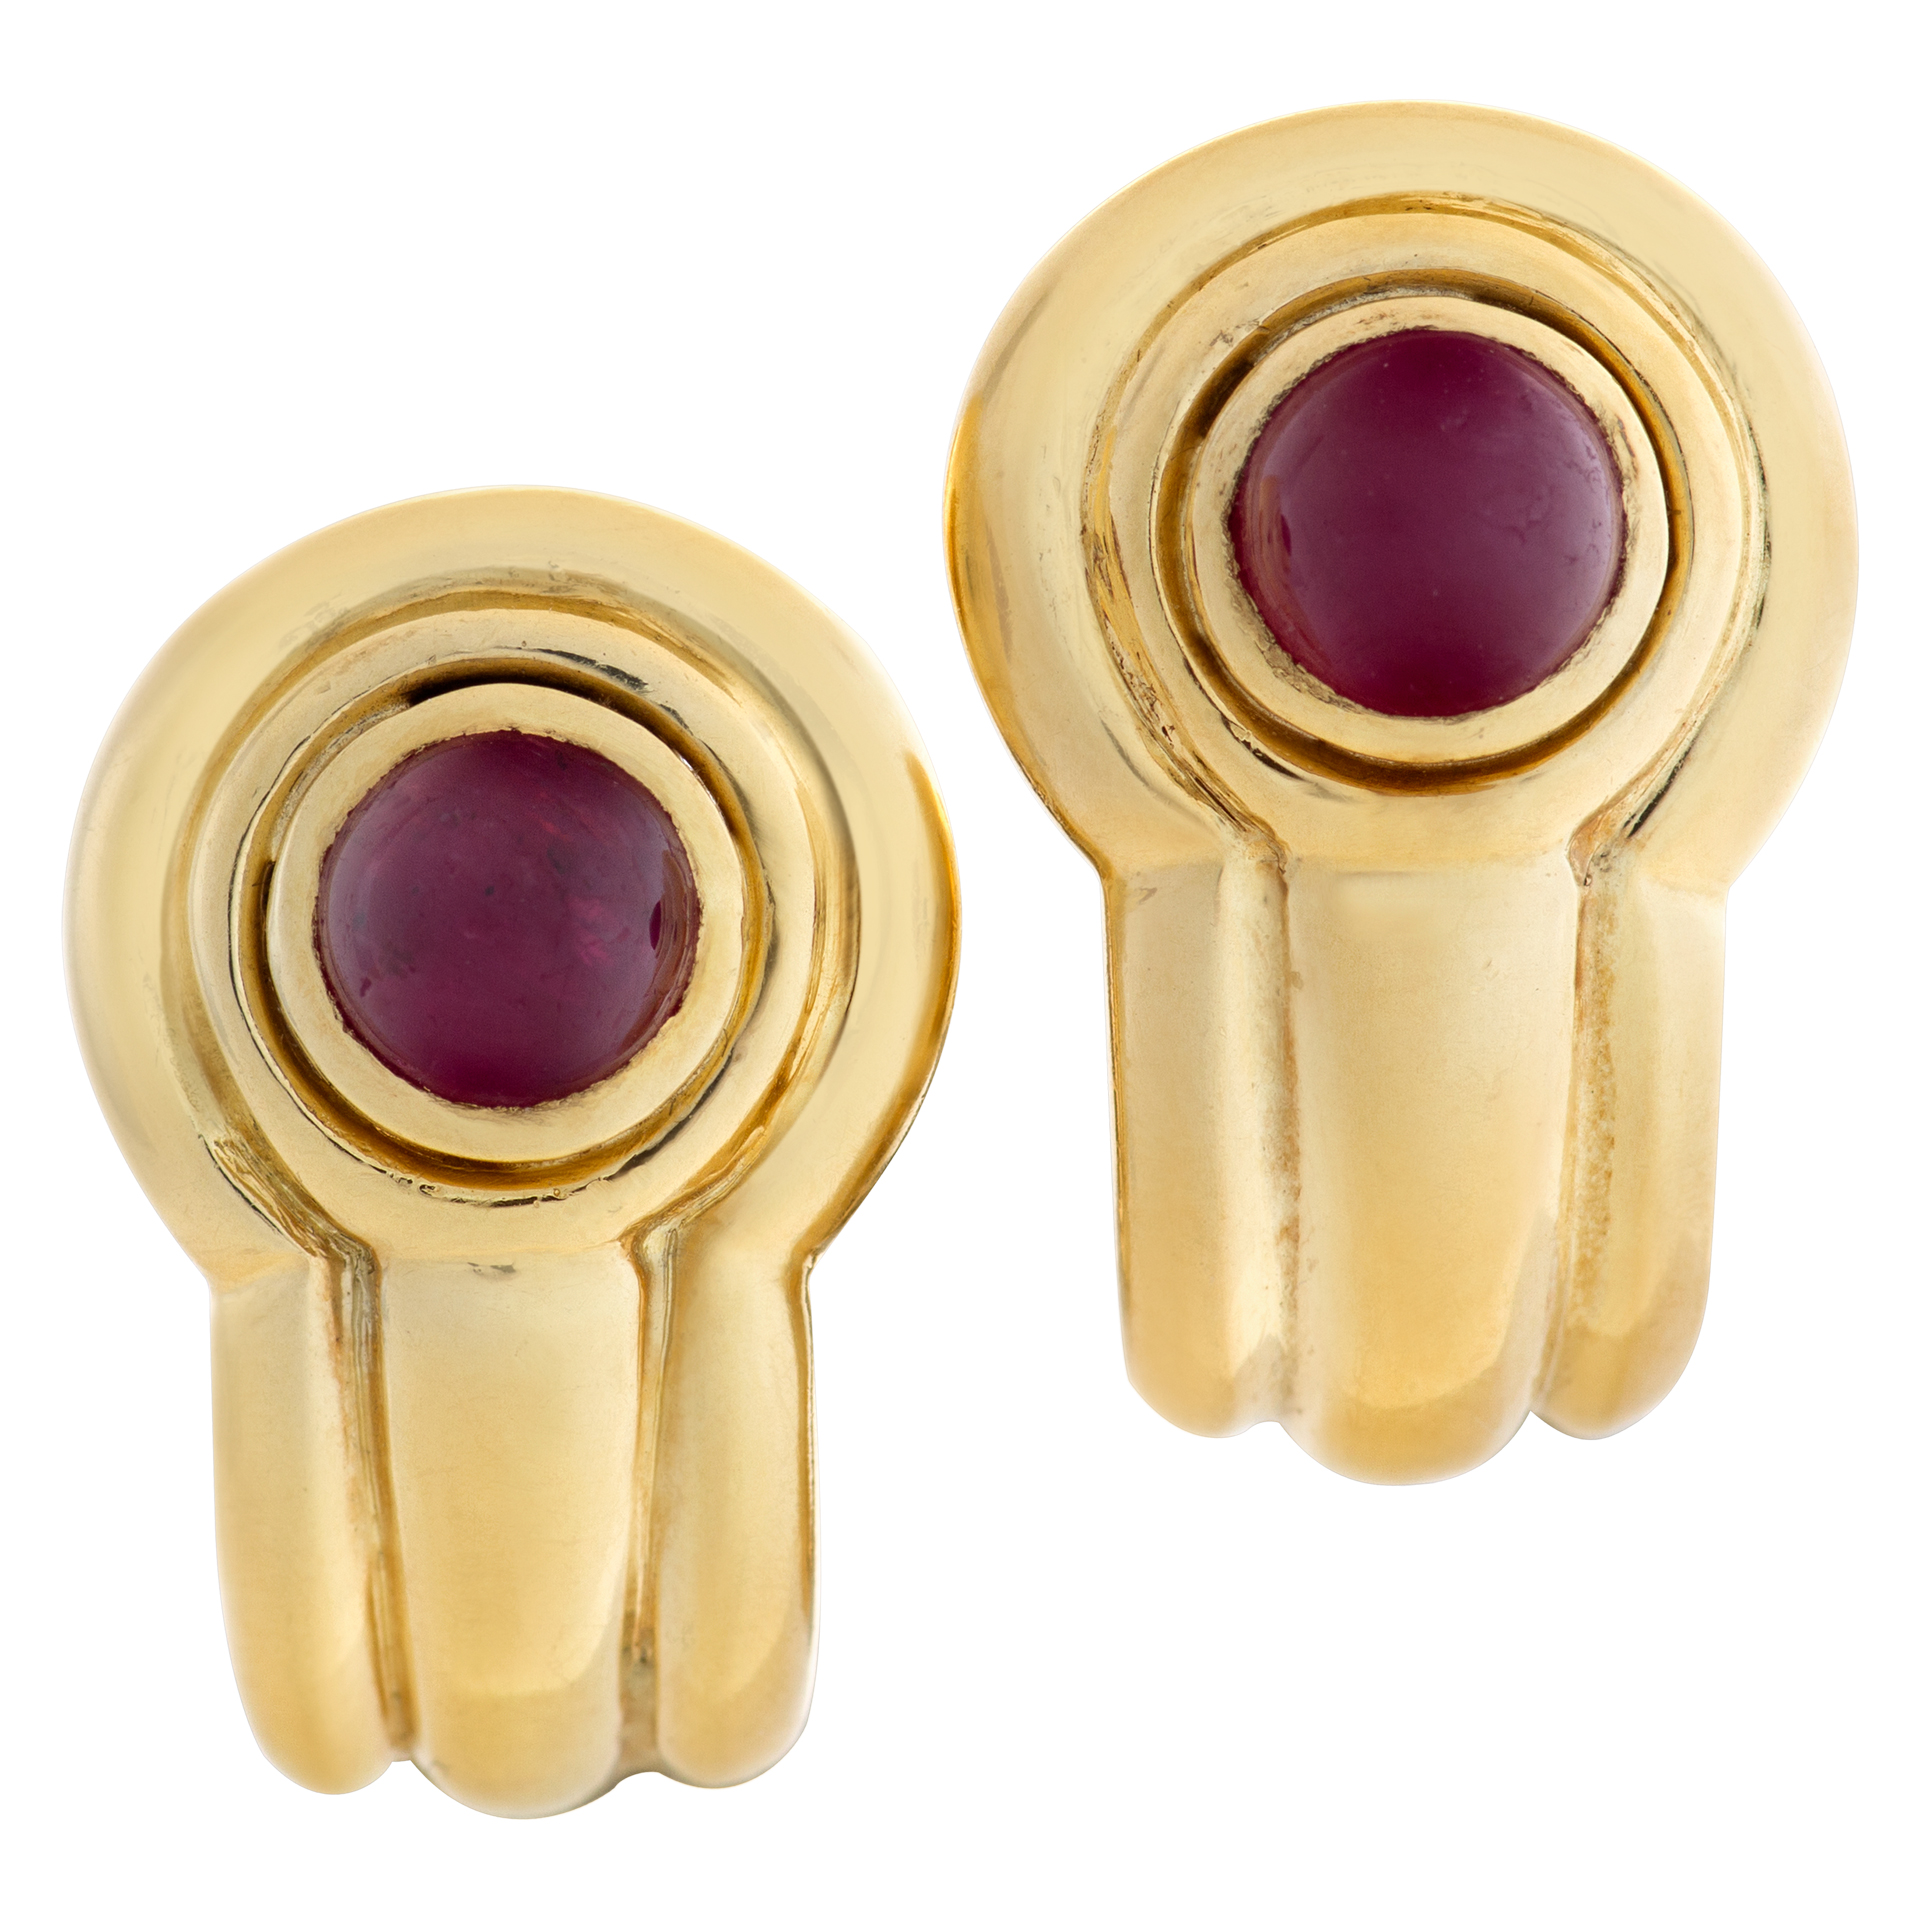 Ruby cabochon earrings in 18k